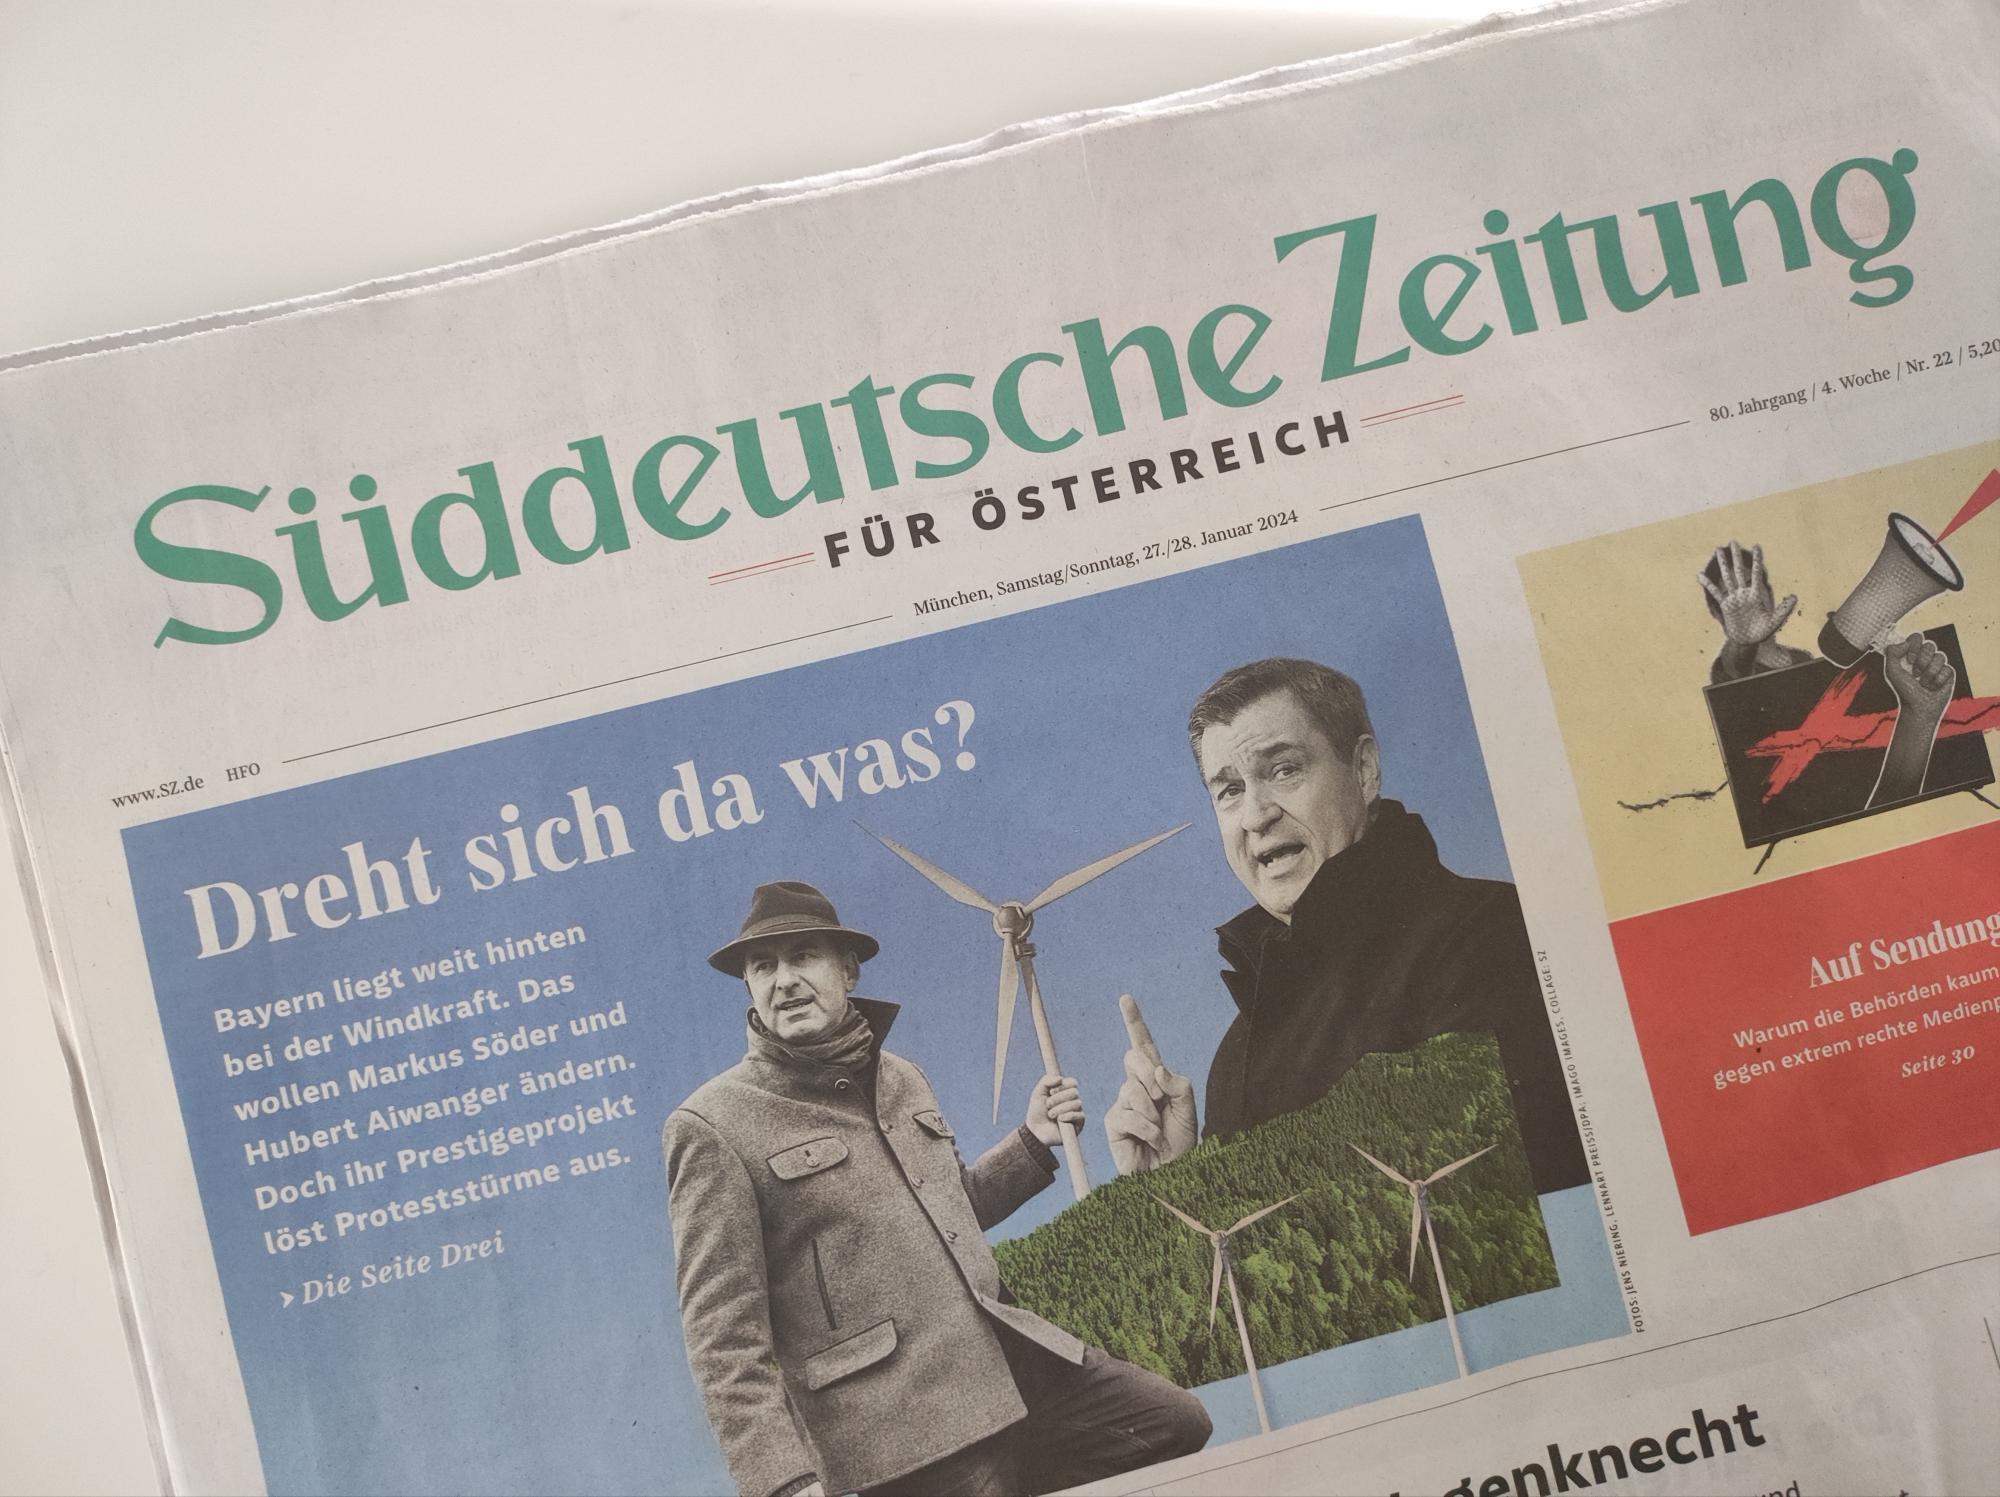 Nach Plagiats-Vorwurf gegen Vizechefin: Süddeutsche sucht nach 